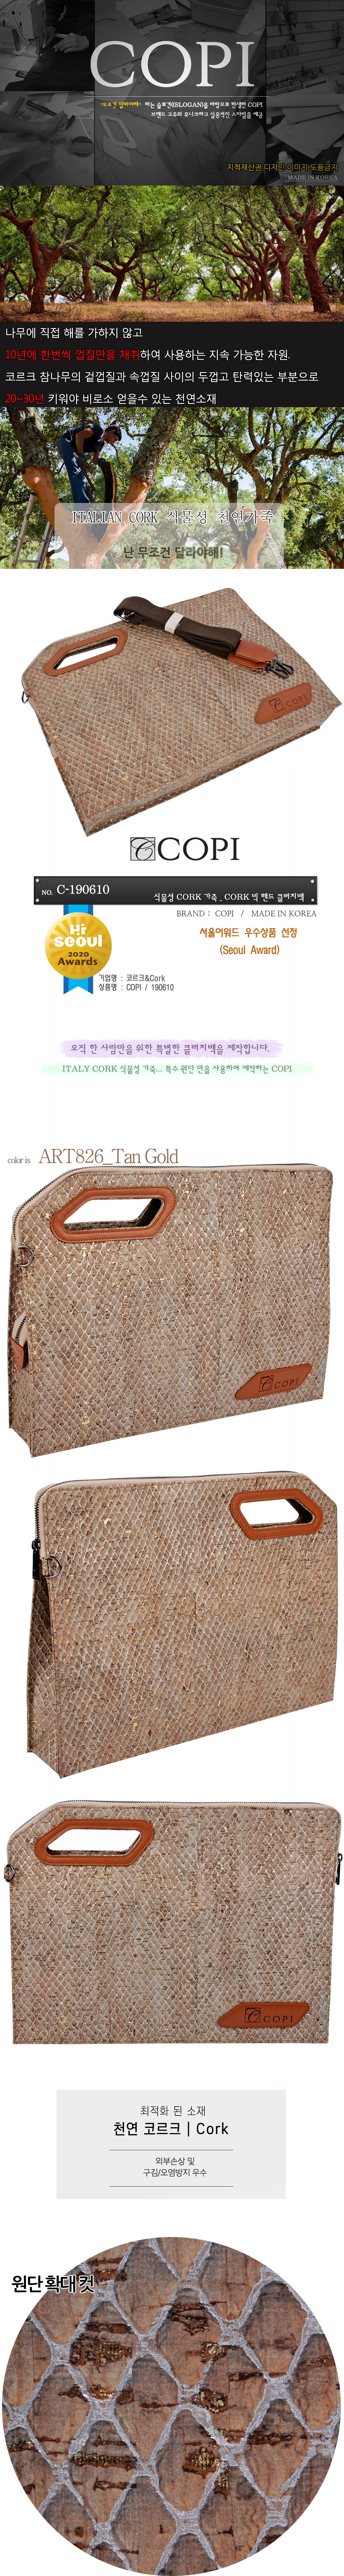 Copi - Premium Italian Cork – Clutch Briefcase